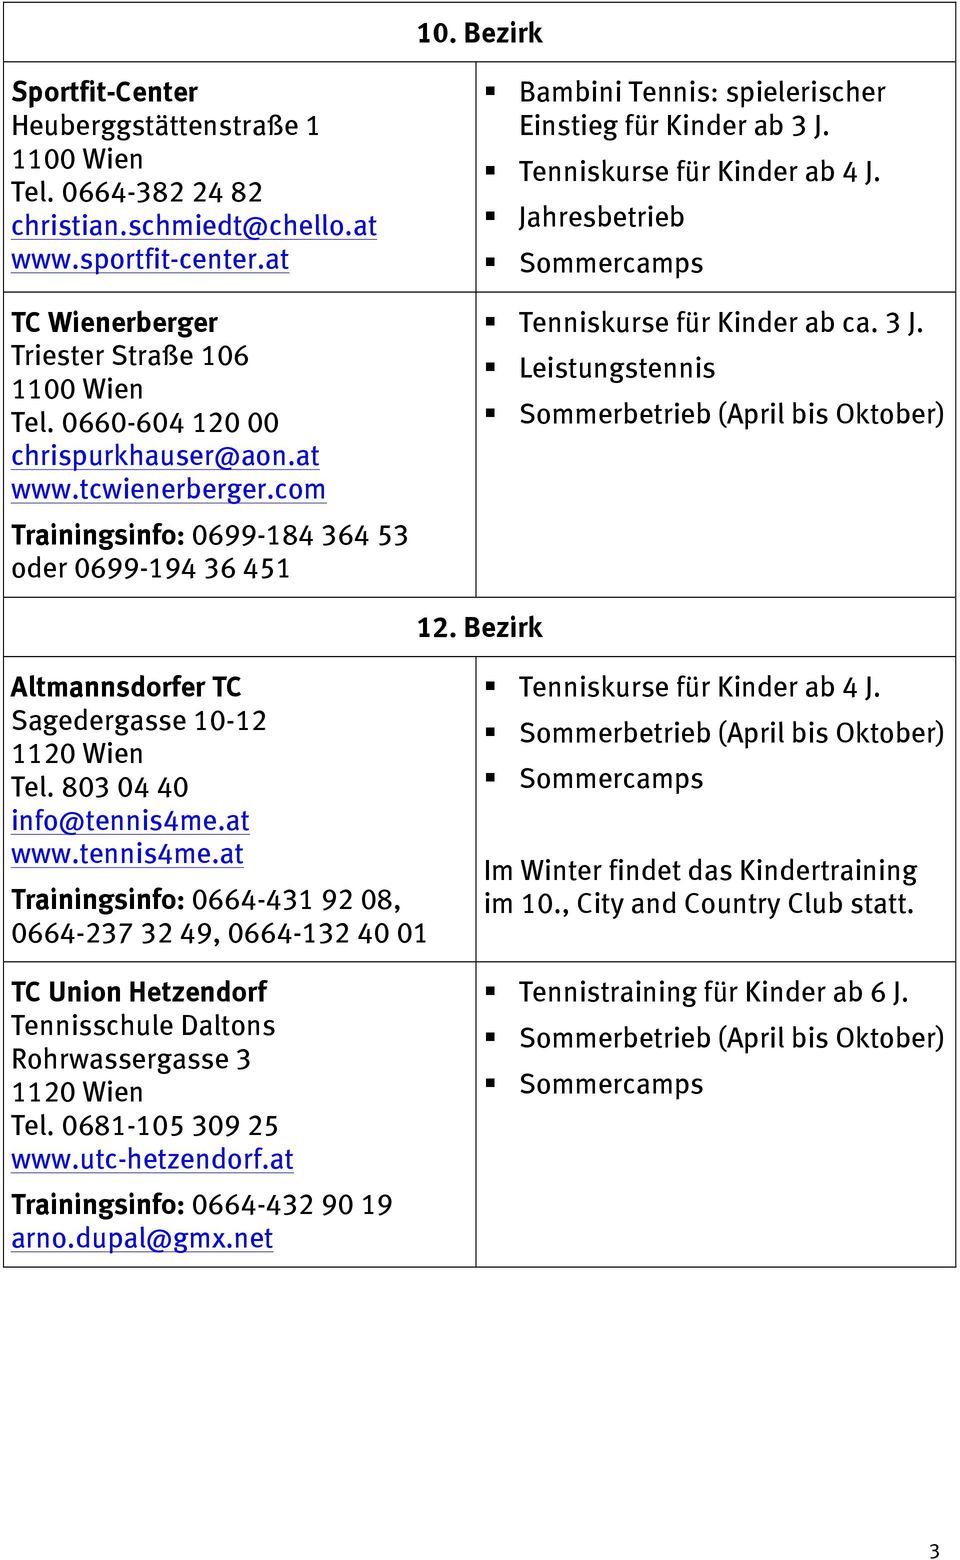 Tenniskurse für Kinder ab ca. 3 J. 12. Bezirk Altmannsdorfer TC Sagedergasse 10-12 1120 Wien Tel. 803 04 40 info@tennis4me.